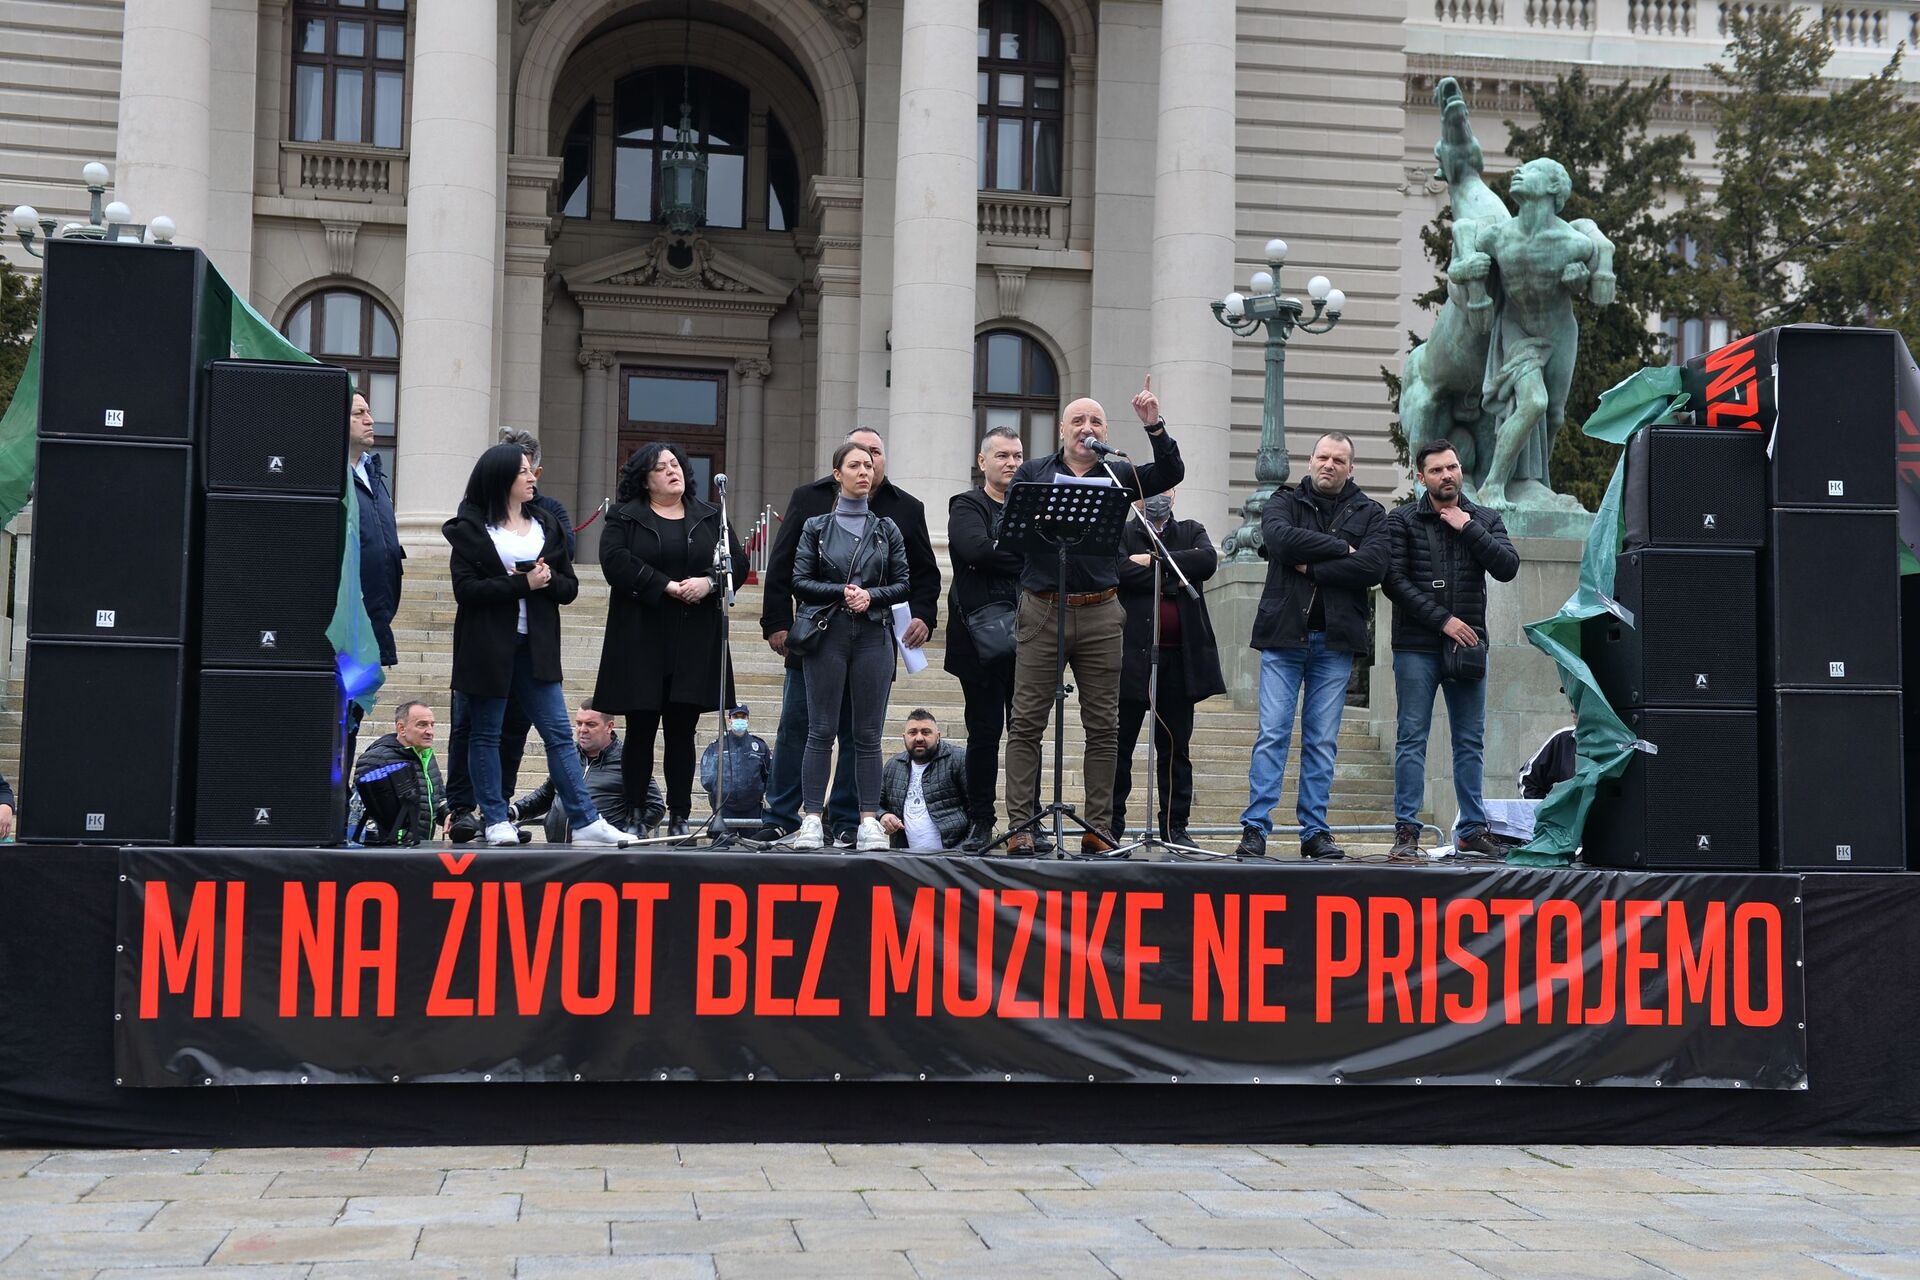 Protest muzičara, fotografa, ugostitelja i frizera u Beogradu: Najavljen štrajk glađu /foto/ - Sputnik Srbija, 1920, 14.03.2021